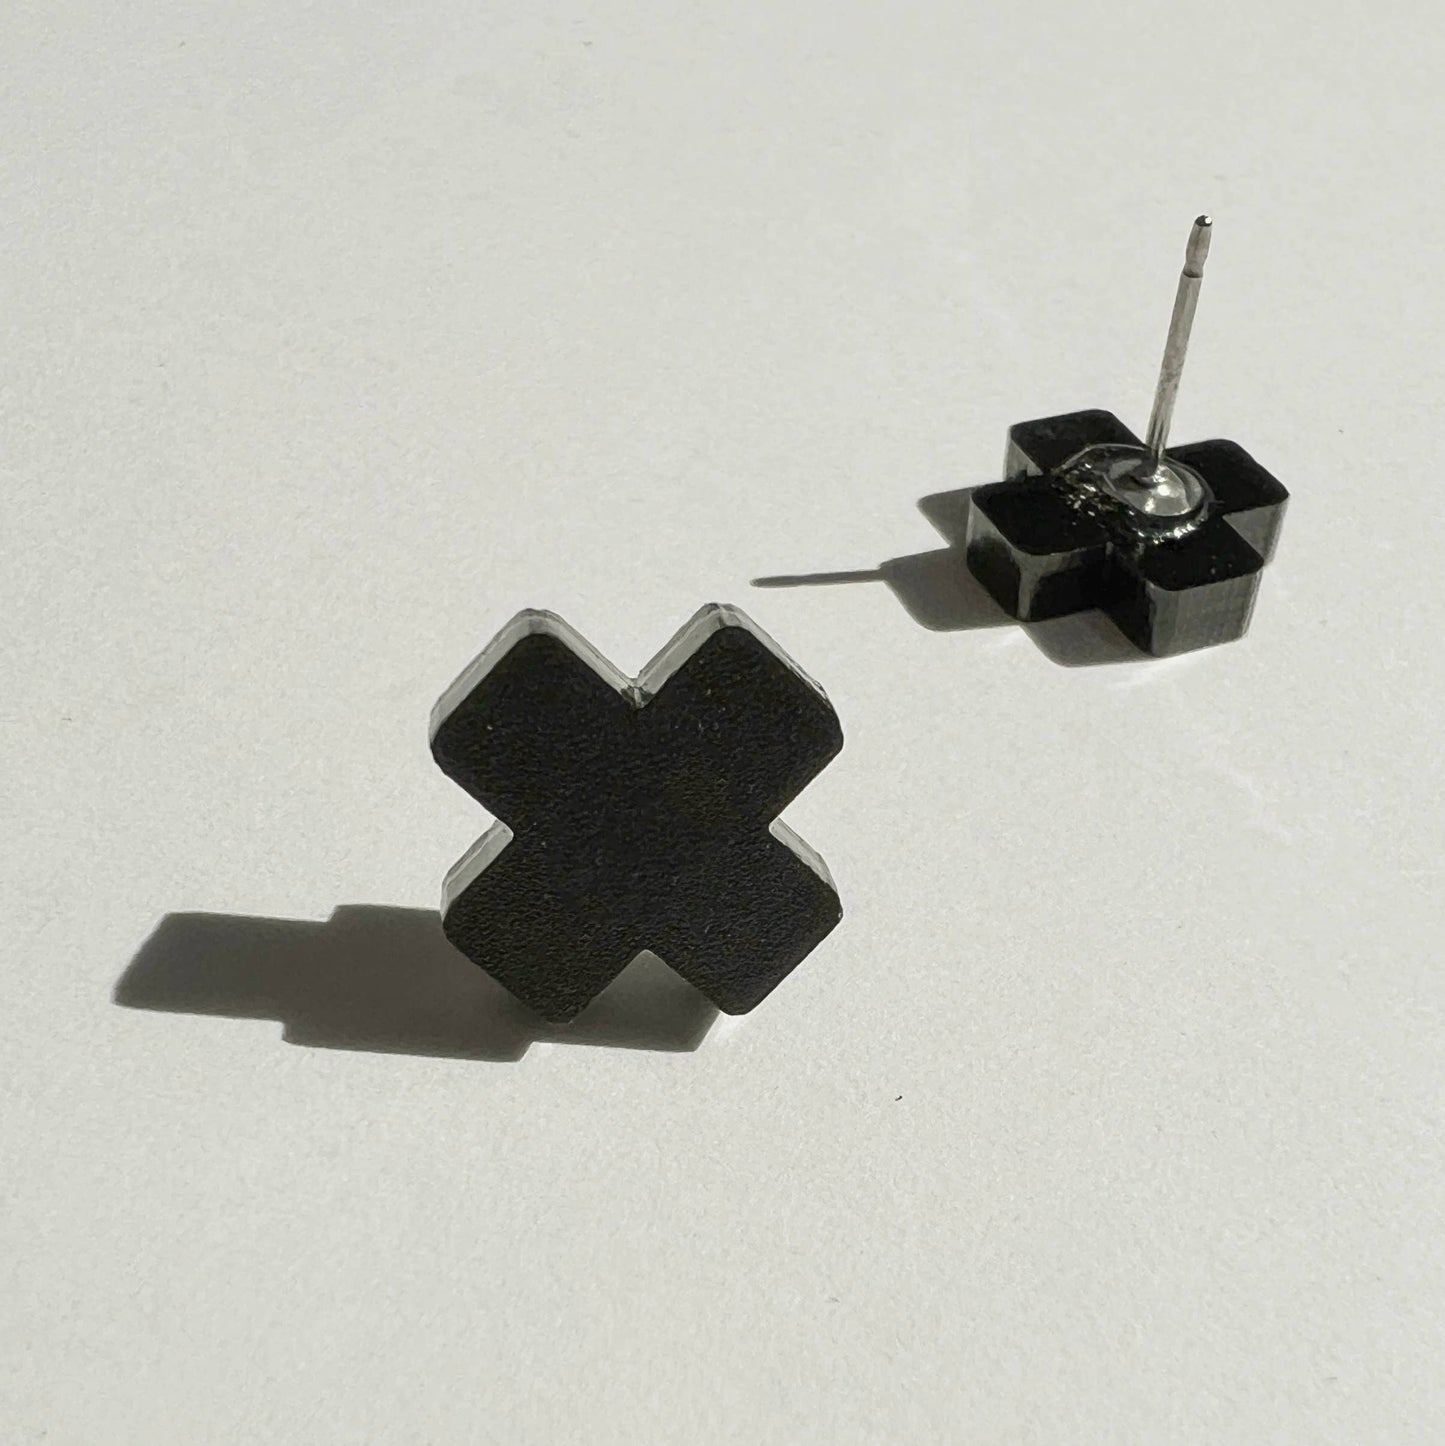 Black Cross Stud Earrings - Small Cross Earrings, Minimalist